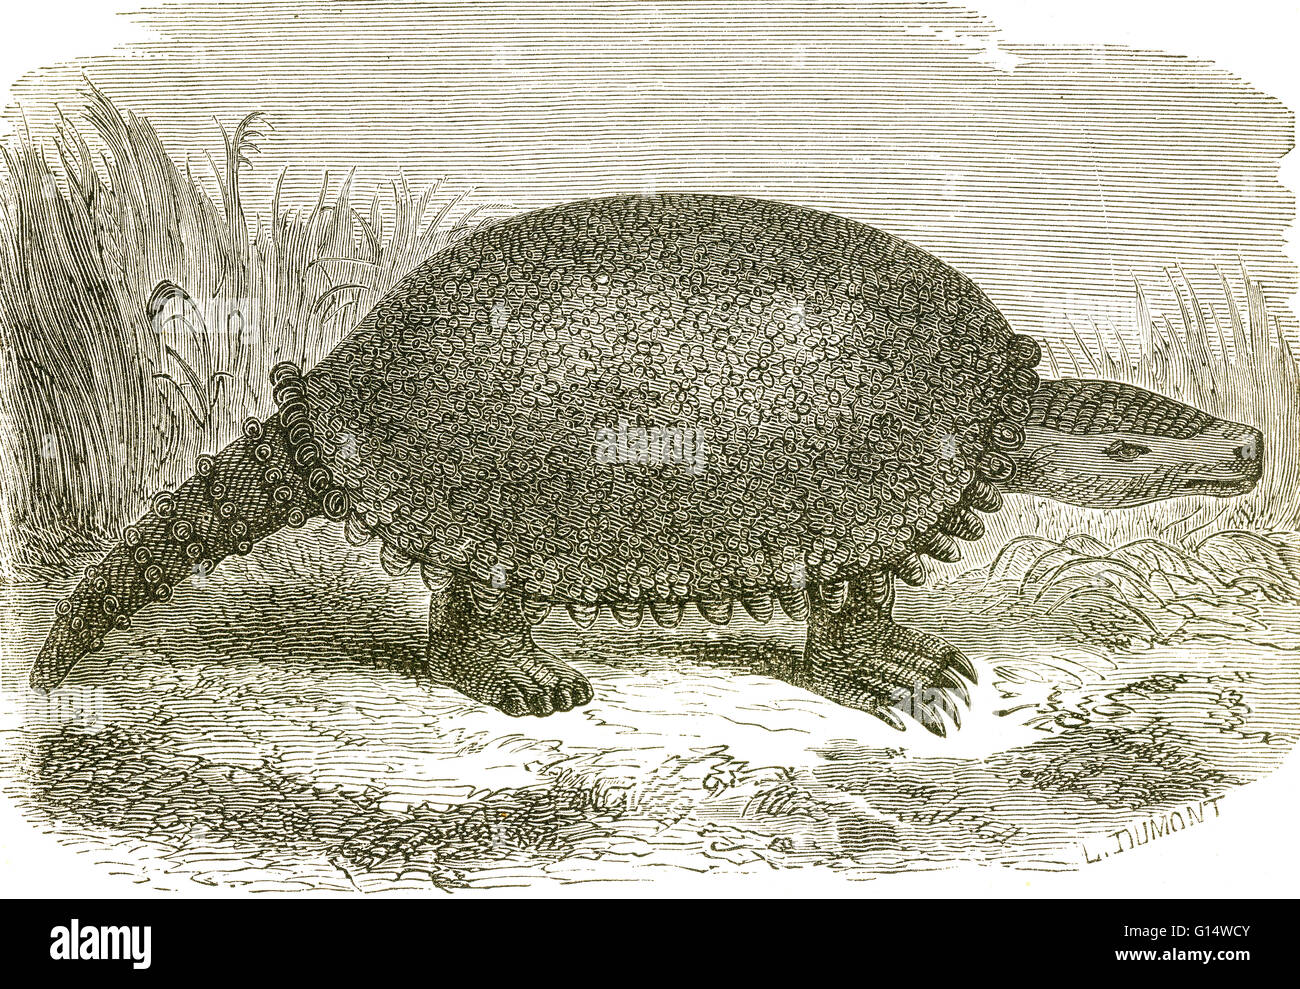 Un glyptodont Schistopleuron typus, à partir de l'âge de glace d'Amérique du Sud. Glyptodontes sont liés aux tatous des temps modernes. Illustration de Louis Figuier a le monde avant le déluge, 1867 American edition. Banque D'Images